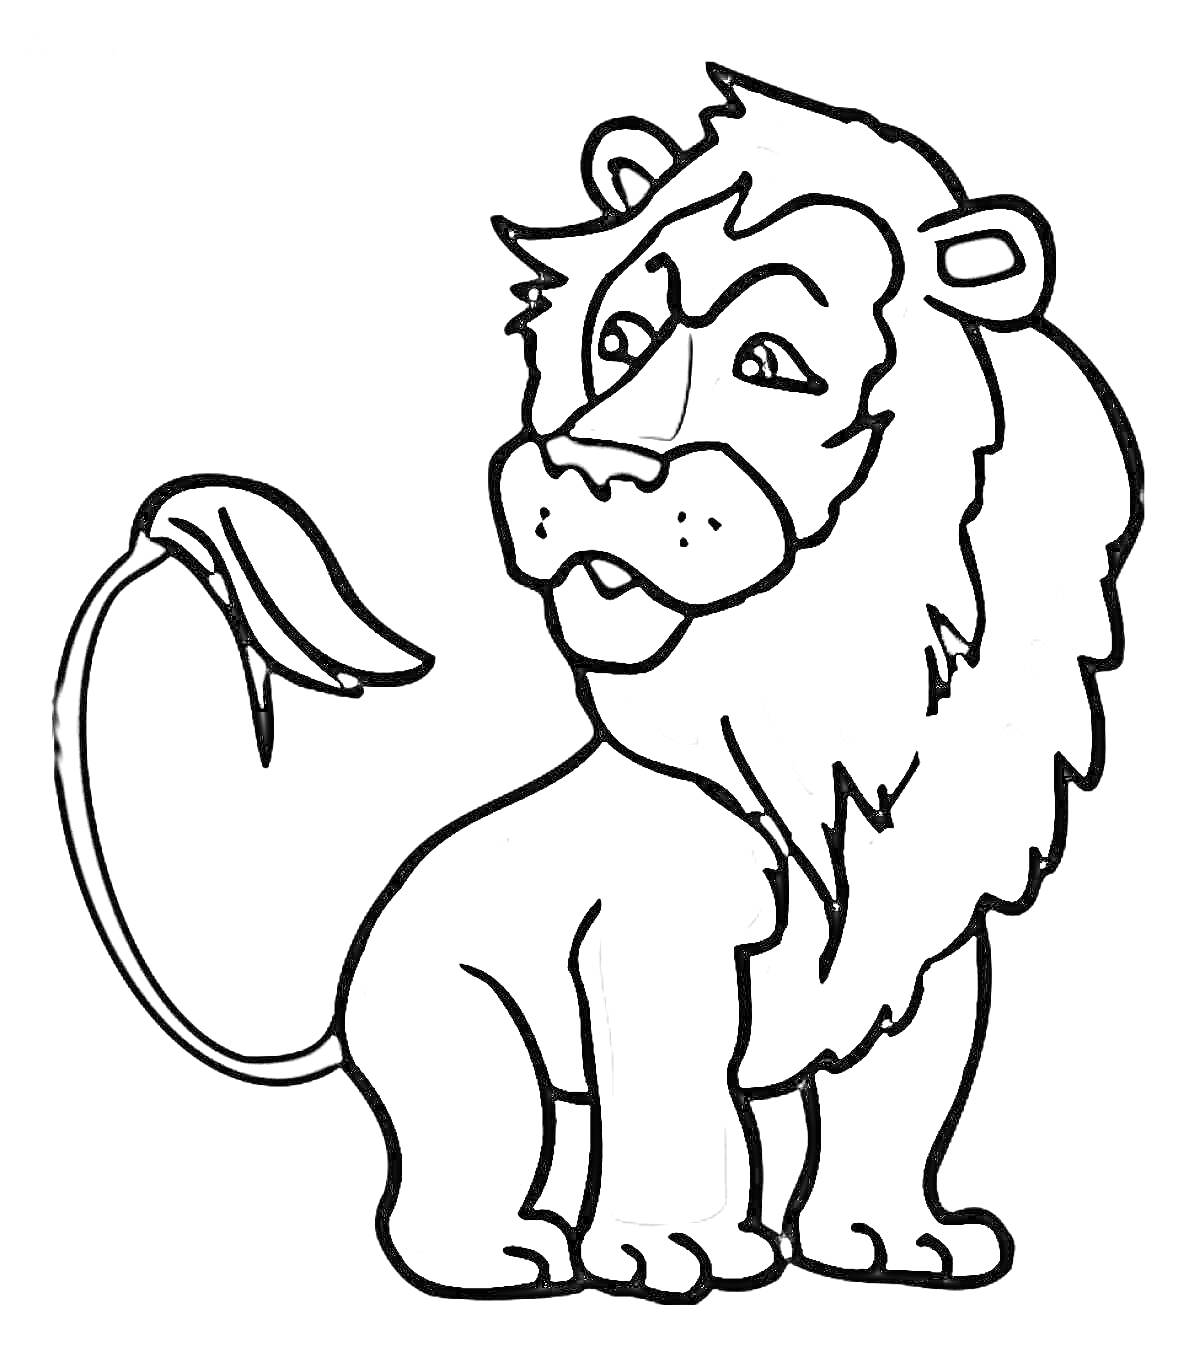 Лев с гривой и хвостом, стоящий в профиль